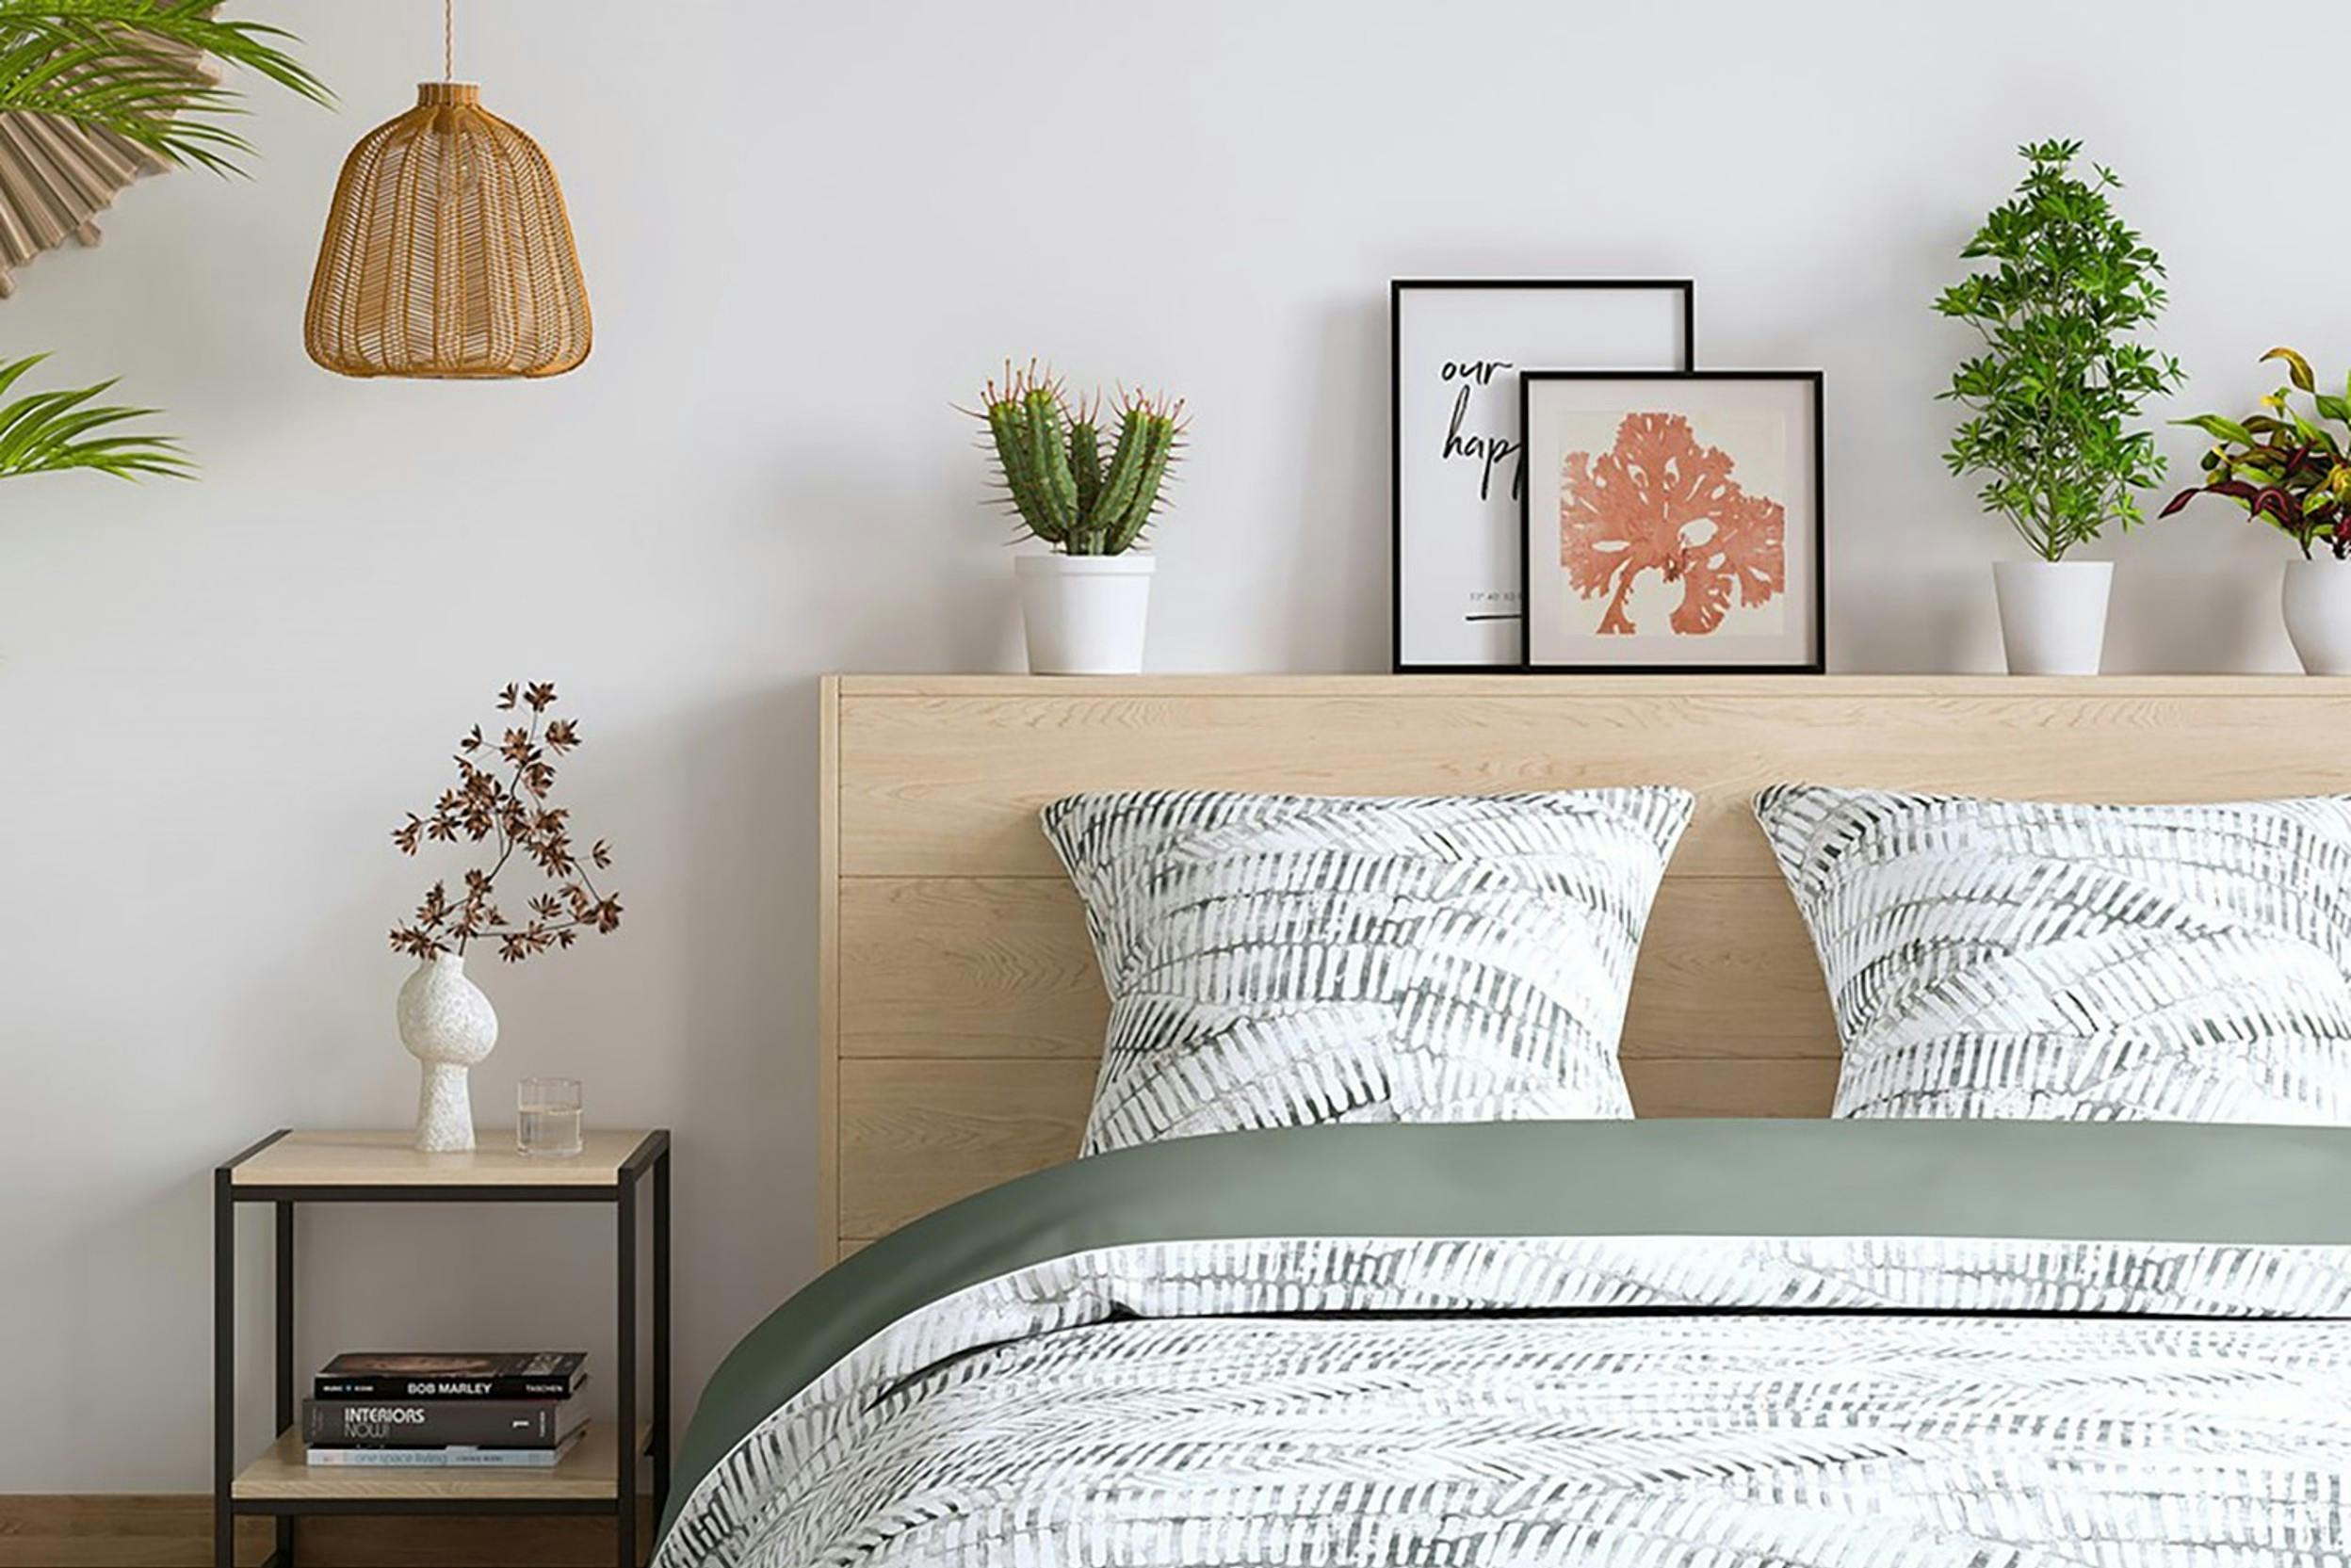 Gemusterte Bettwäsche in Salbeigrün auf einem mit Bildern und Pflanzen dekoriertem Holzbett